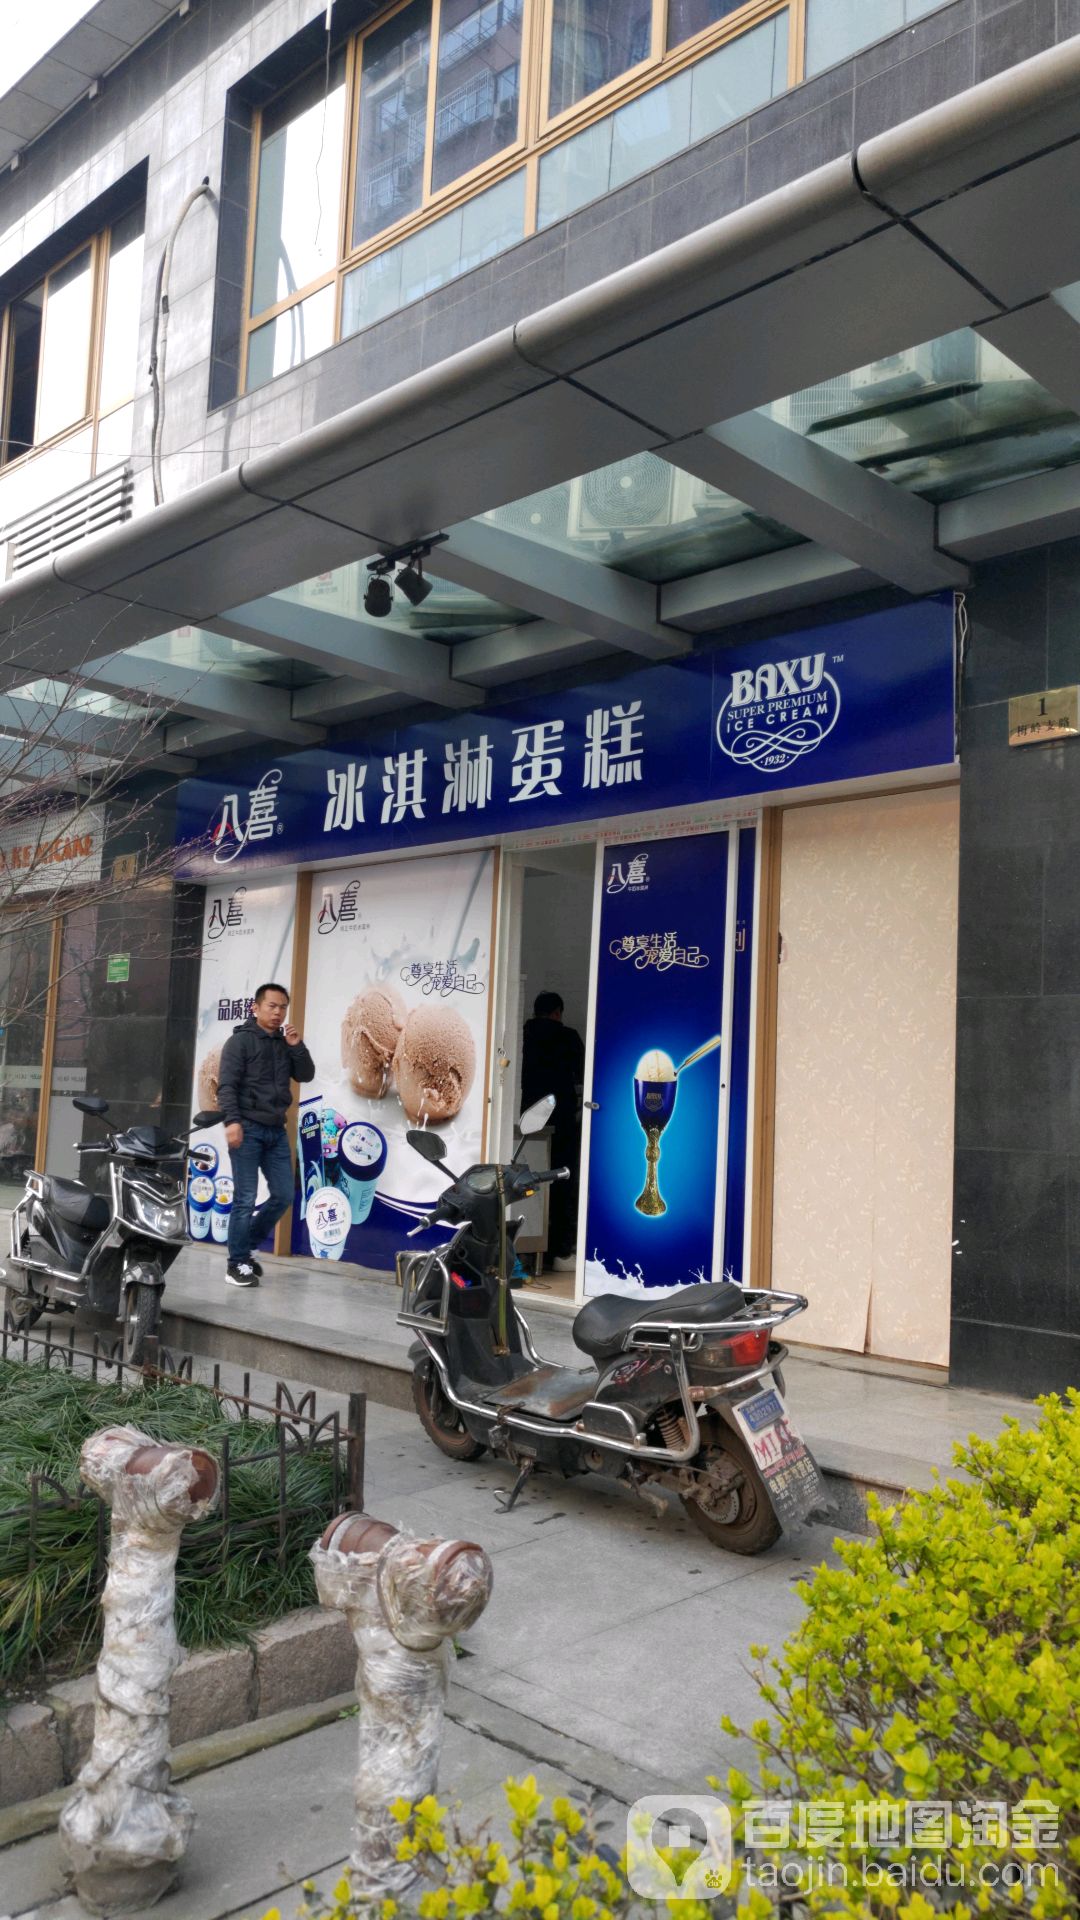 标签:冰淇淋冰淇淋蛋糕美食甜品店八喜(上海店)共多少人浏览:4041327